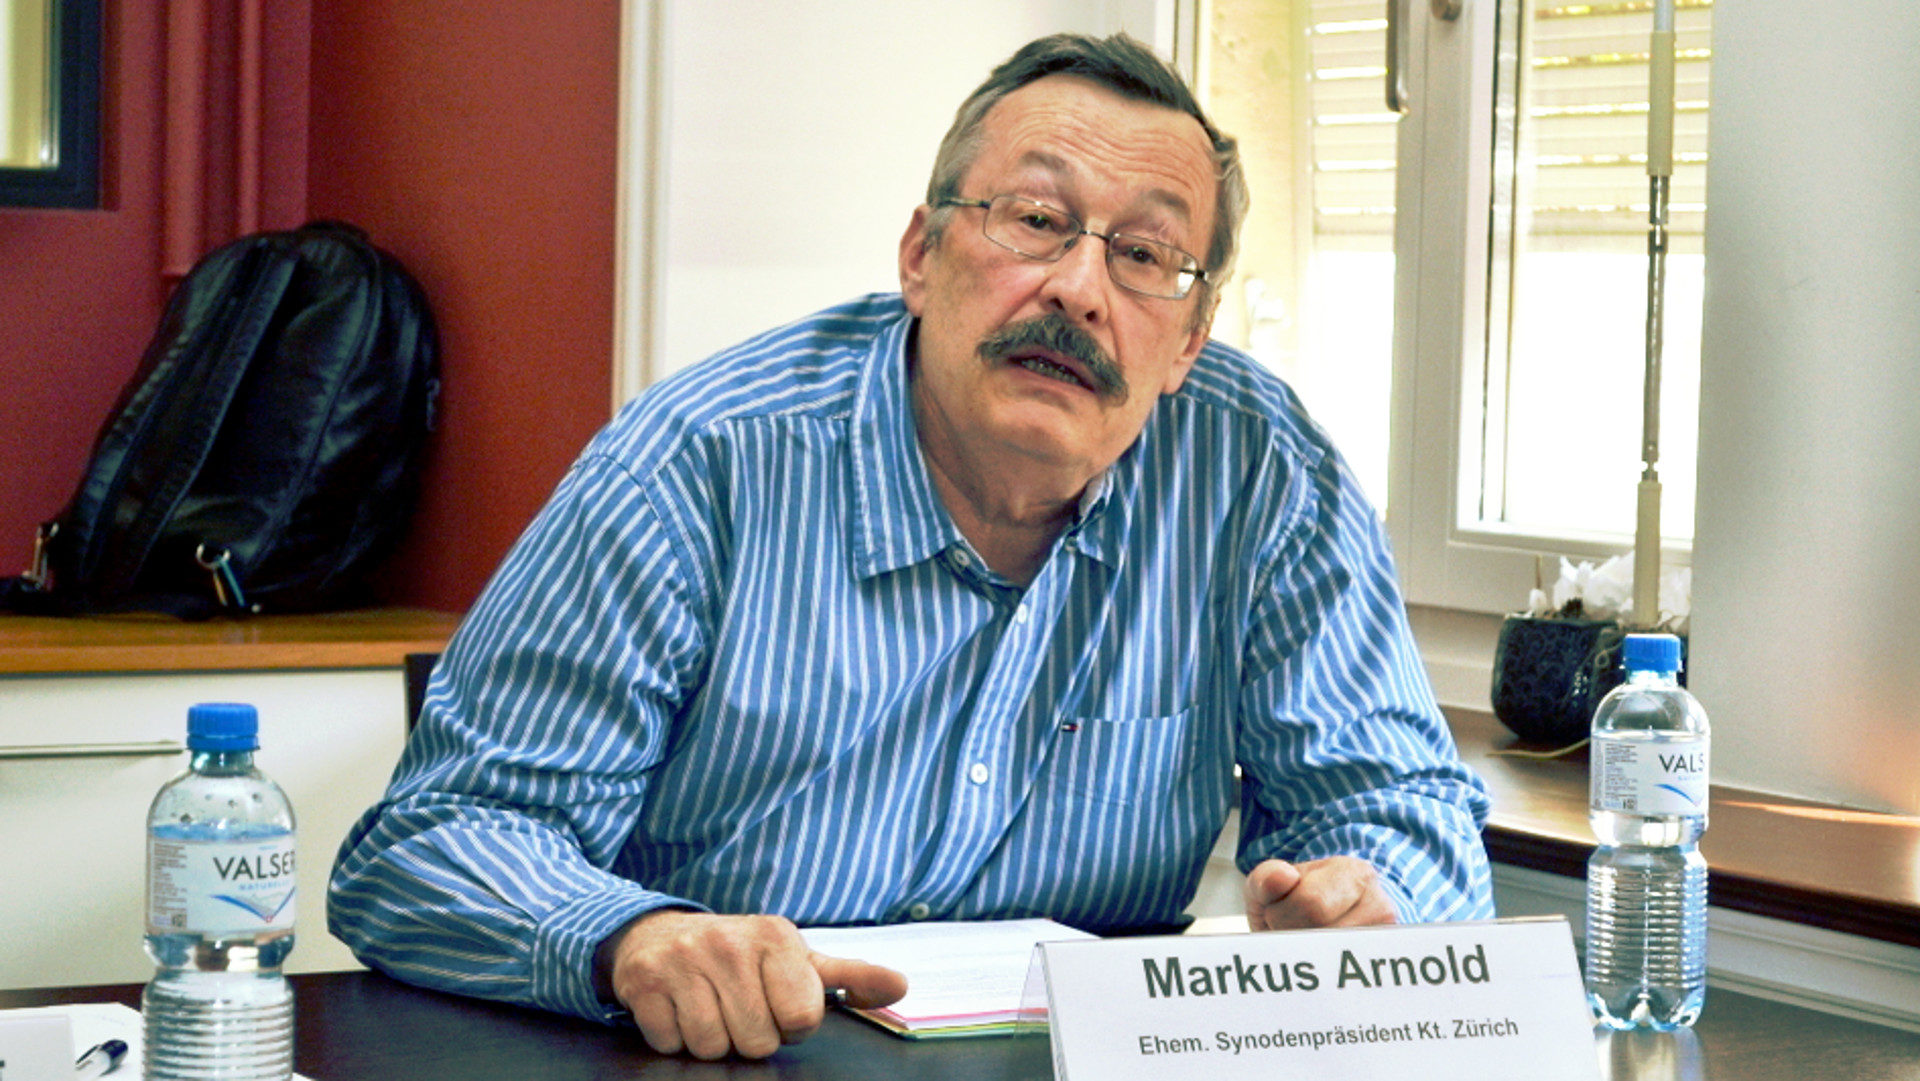 Markus Arnold